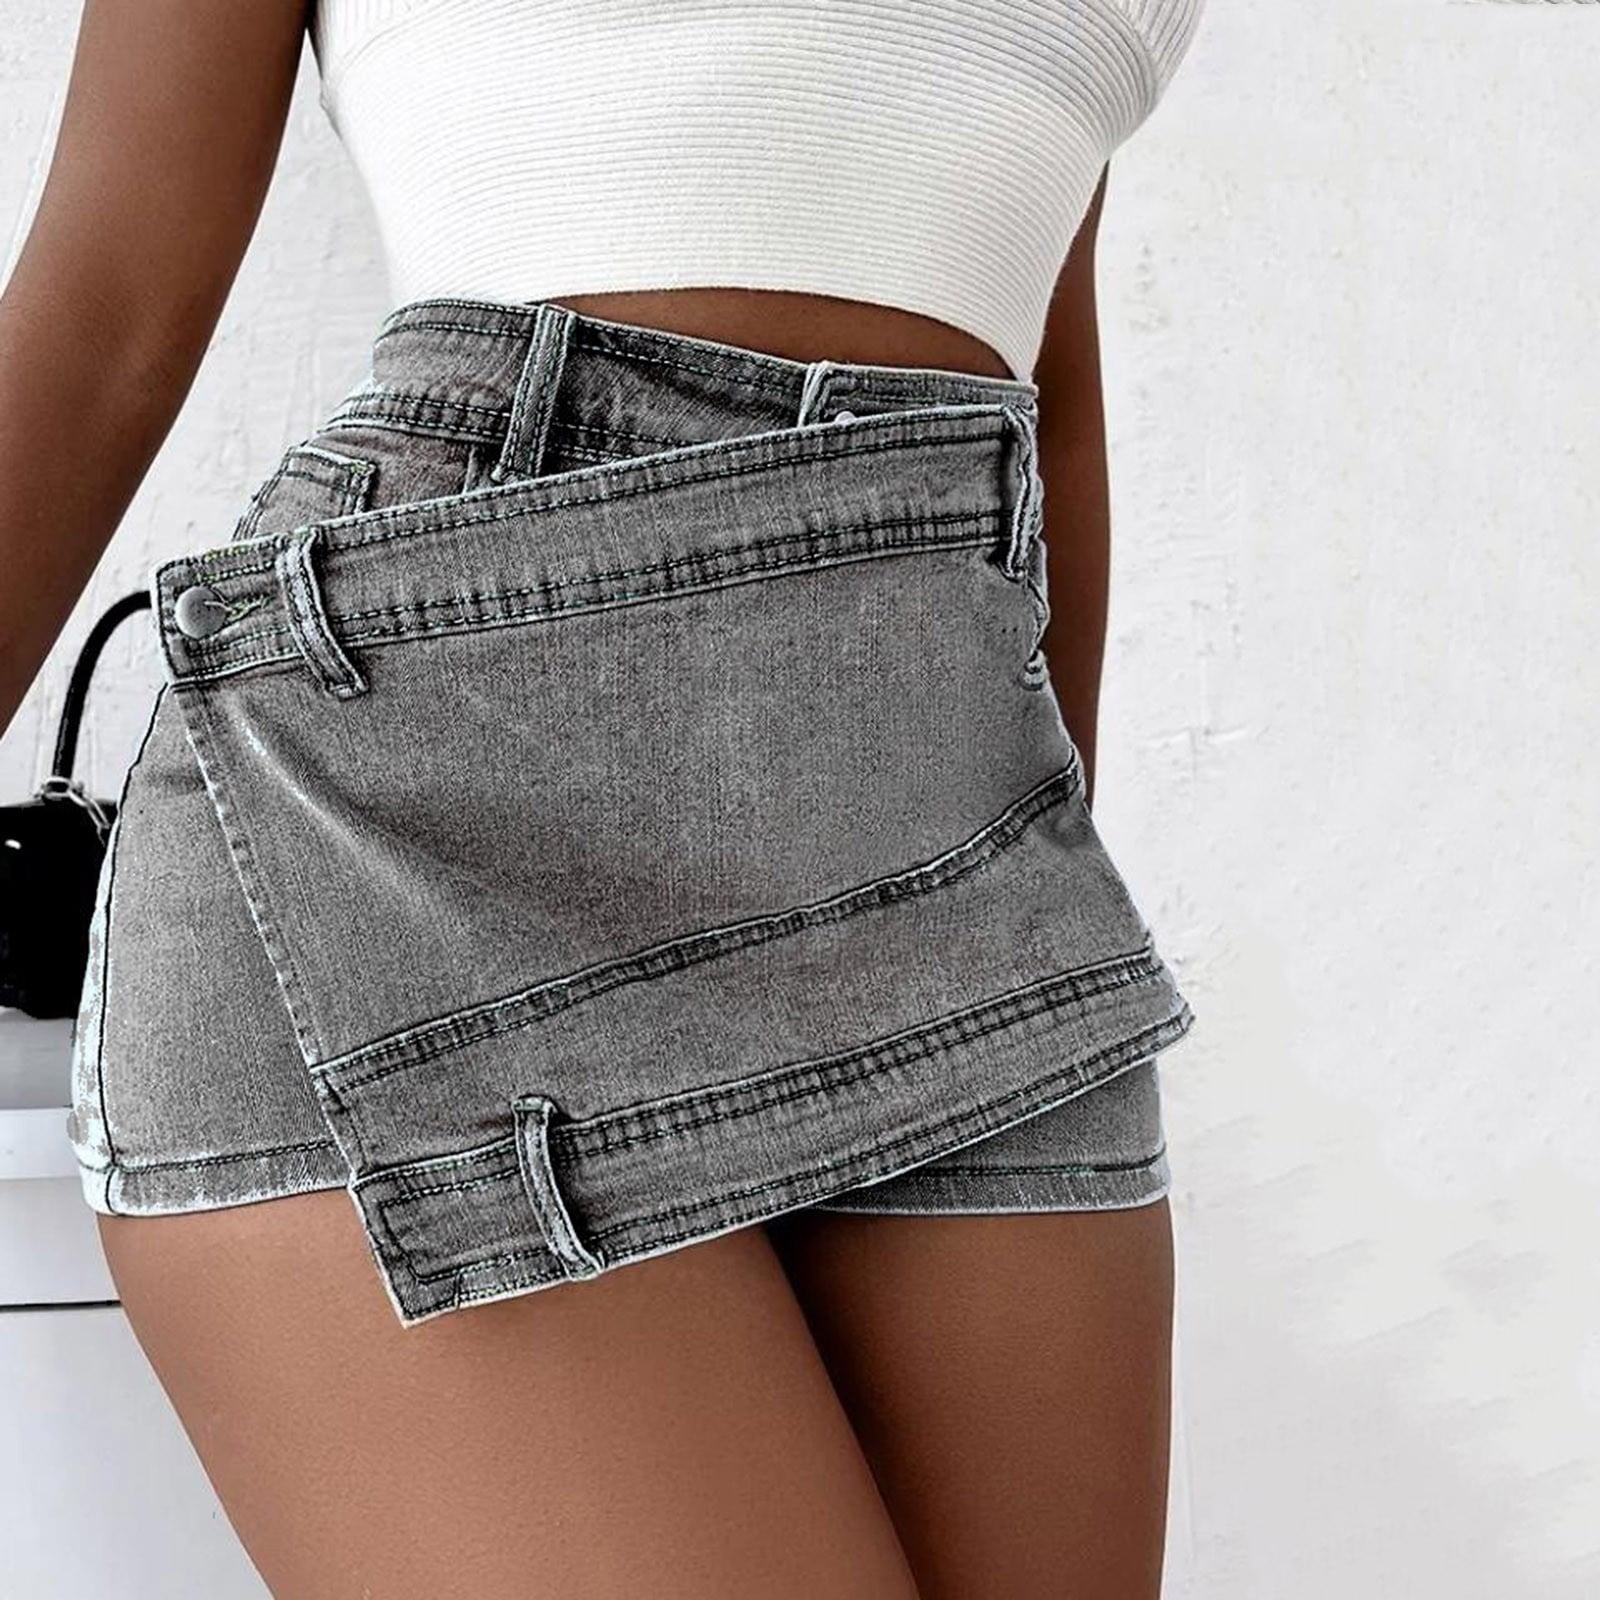 JNGSA Women's Mini Denim Skirts Short Jean Skirt High Waist Irregular ...